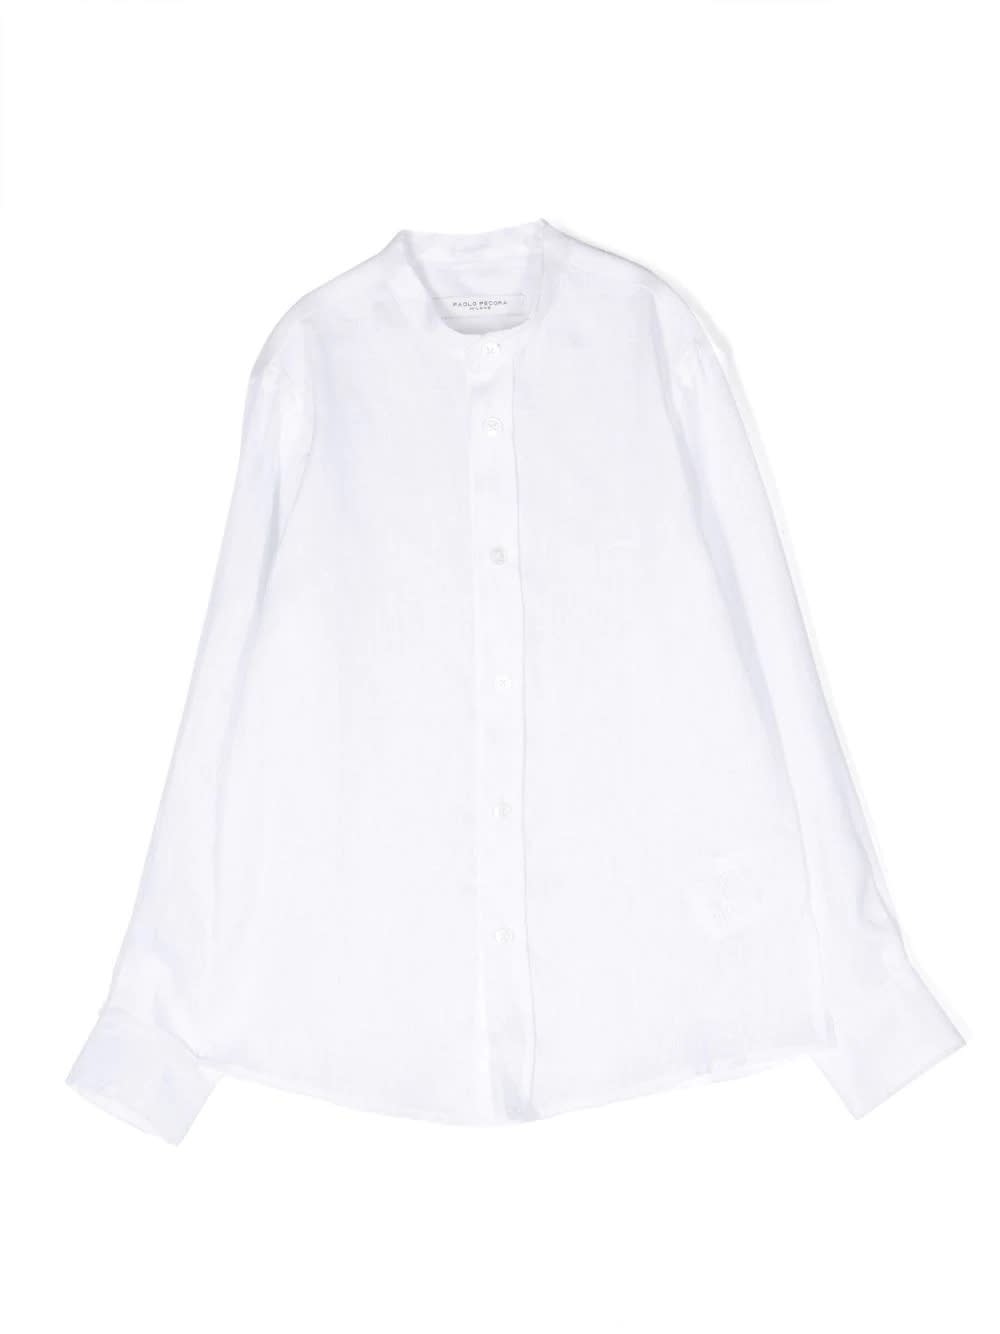 Paolo Pecora Kids' Korean Shirt In White